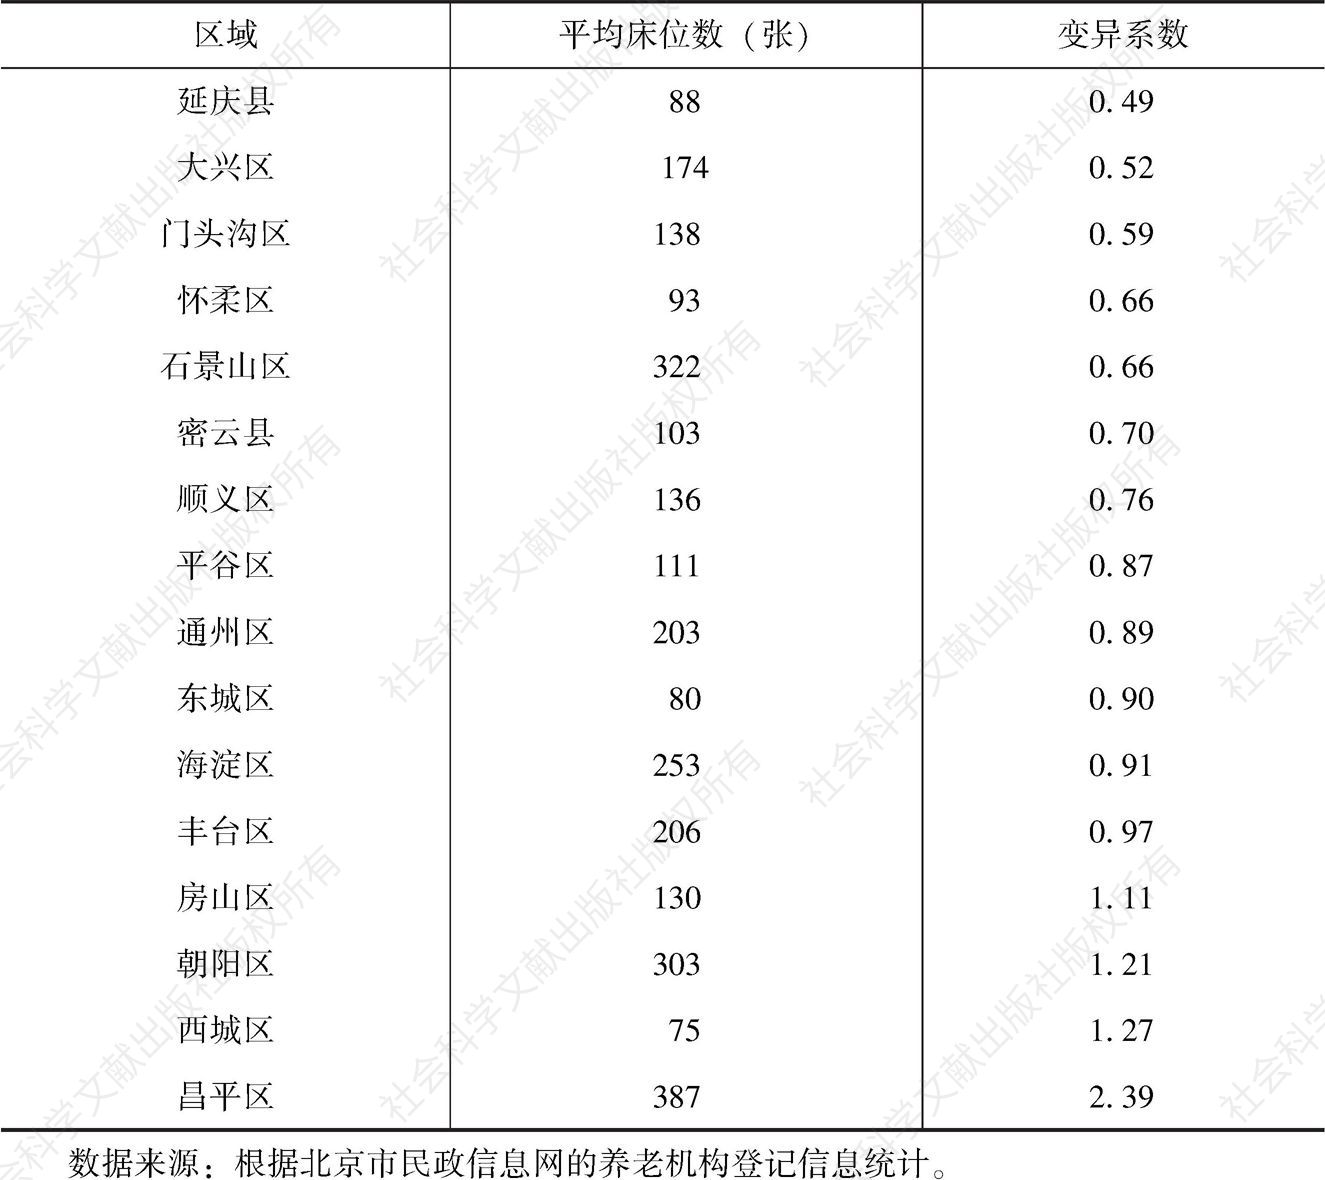 表5-2 北京市各区养老机构规模差异比较